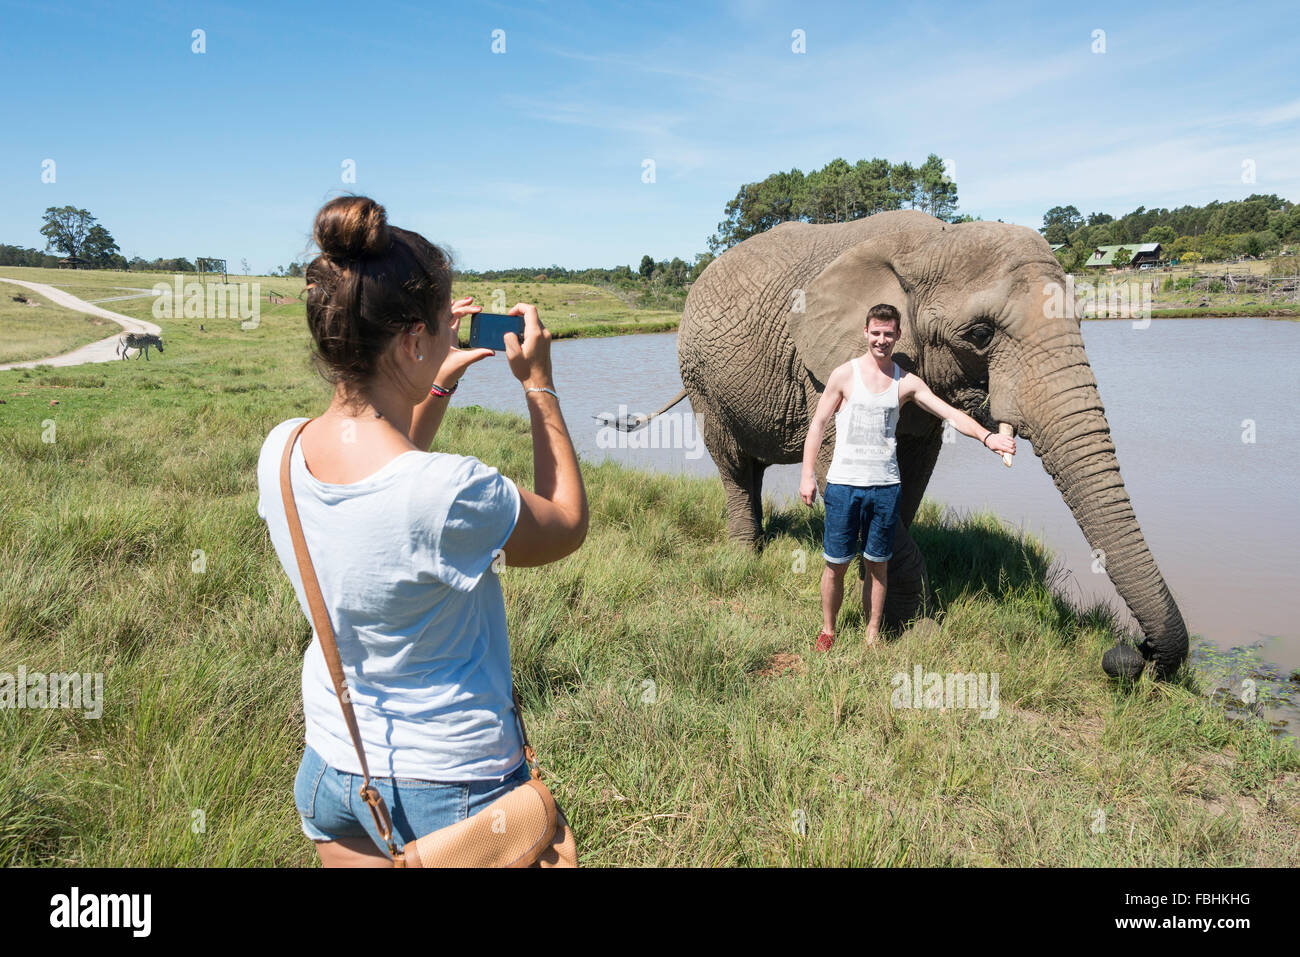 Coppia con elefante a Knysna Elephant Park, Plettenberg Bay, Knysna Knysna Comune, Provincia del Capo Occidentale, Sud Africa Foto Stock